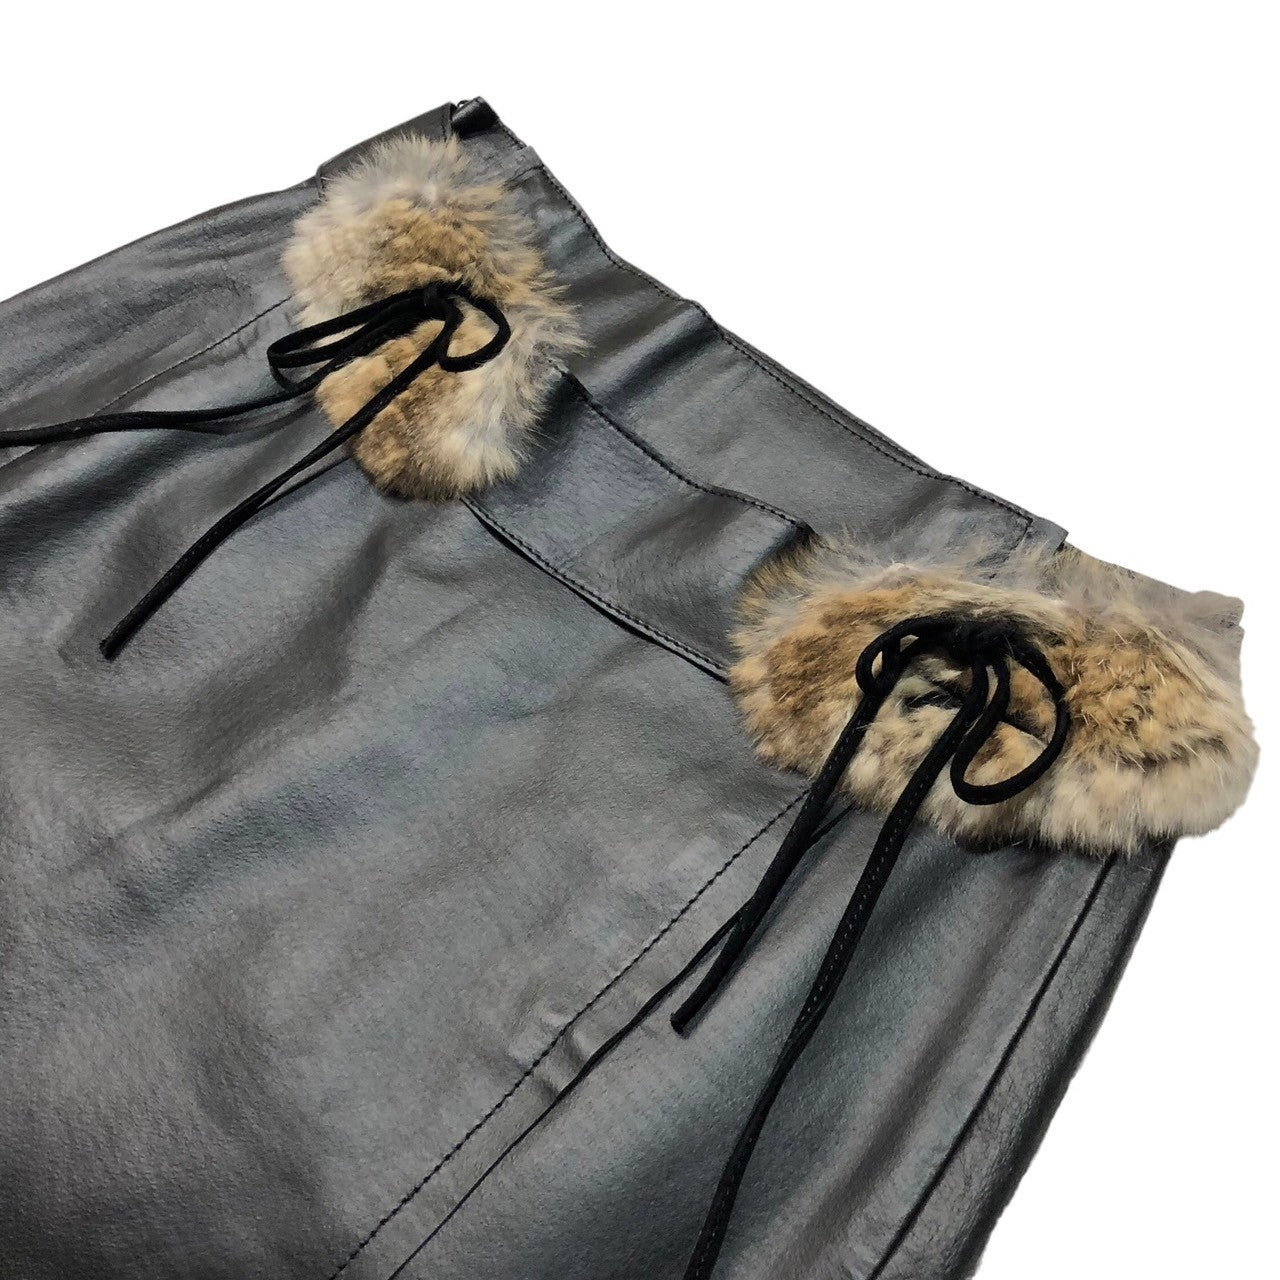 BURBERRY BLUE LABEL(バーバリーブルーレーベル) Real leather skirt with fur decoration ファー装飾 本革 スカート FLF19-611 38(M) ブラック×ベージュ